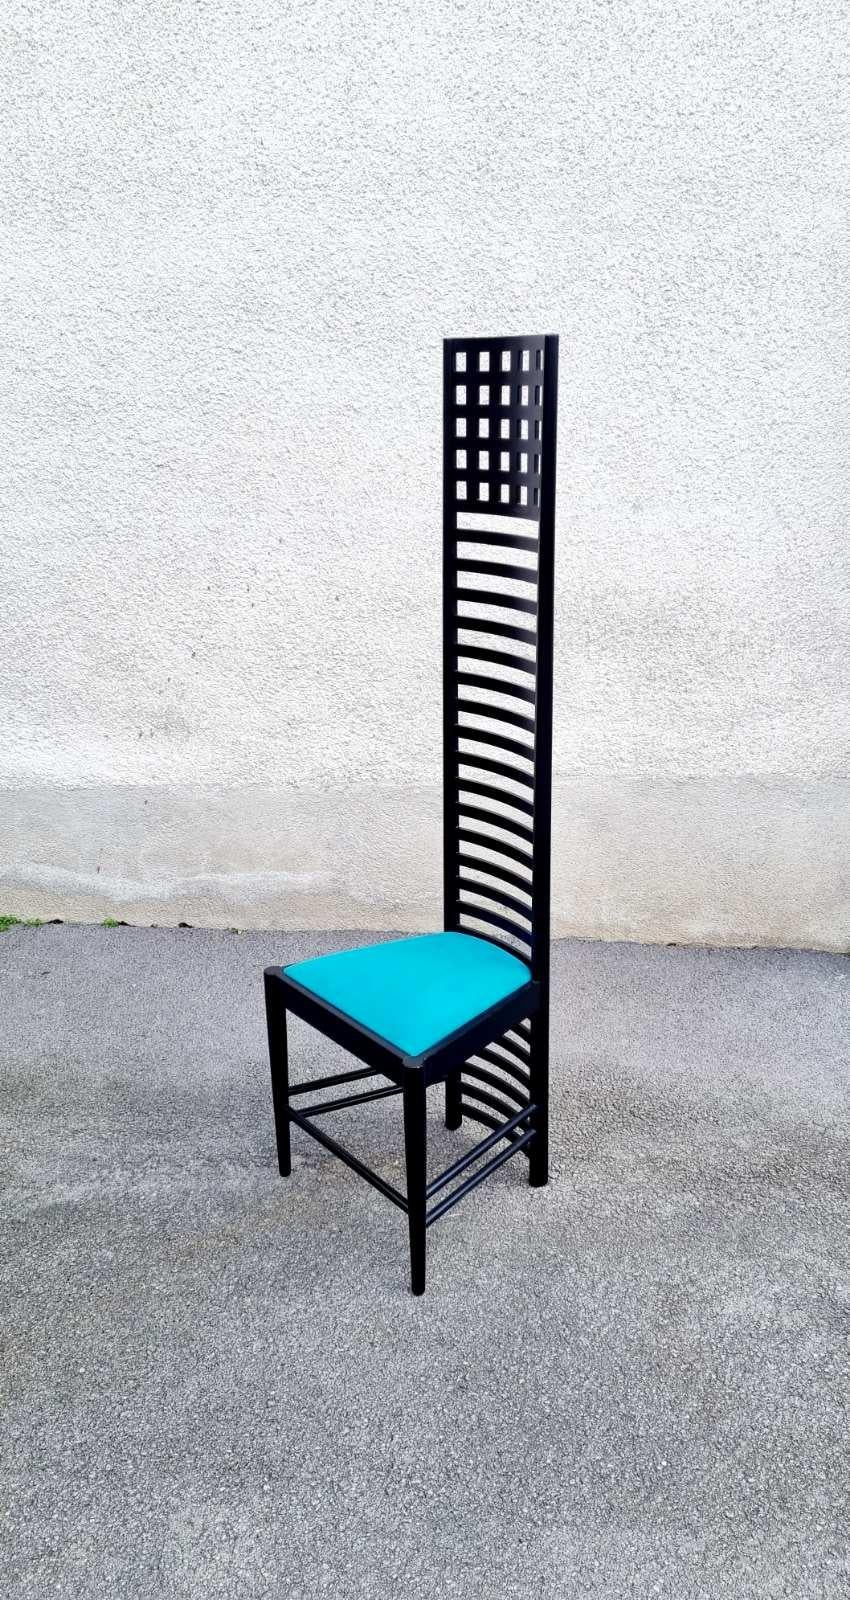 Gorgeous Hill House 1 Chair wurde von Charles Rennie Mackintosh im Jahr 1902 entworfen.
Dies ist eine Reproduktion aus den 80er Jahren, hergestellt in Cormons Italien.
-------
Er ist einer der berühmtesten Stühle, mit einem einzigartigen